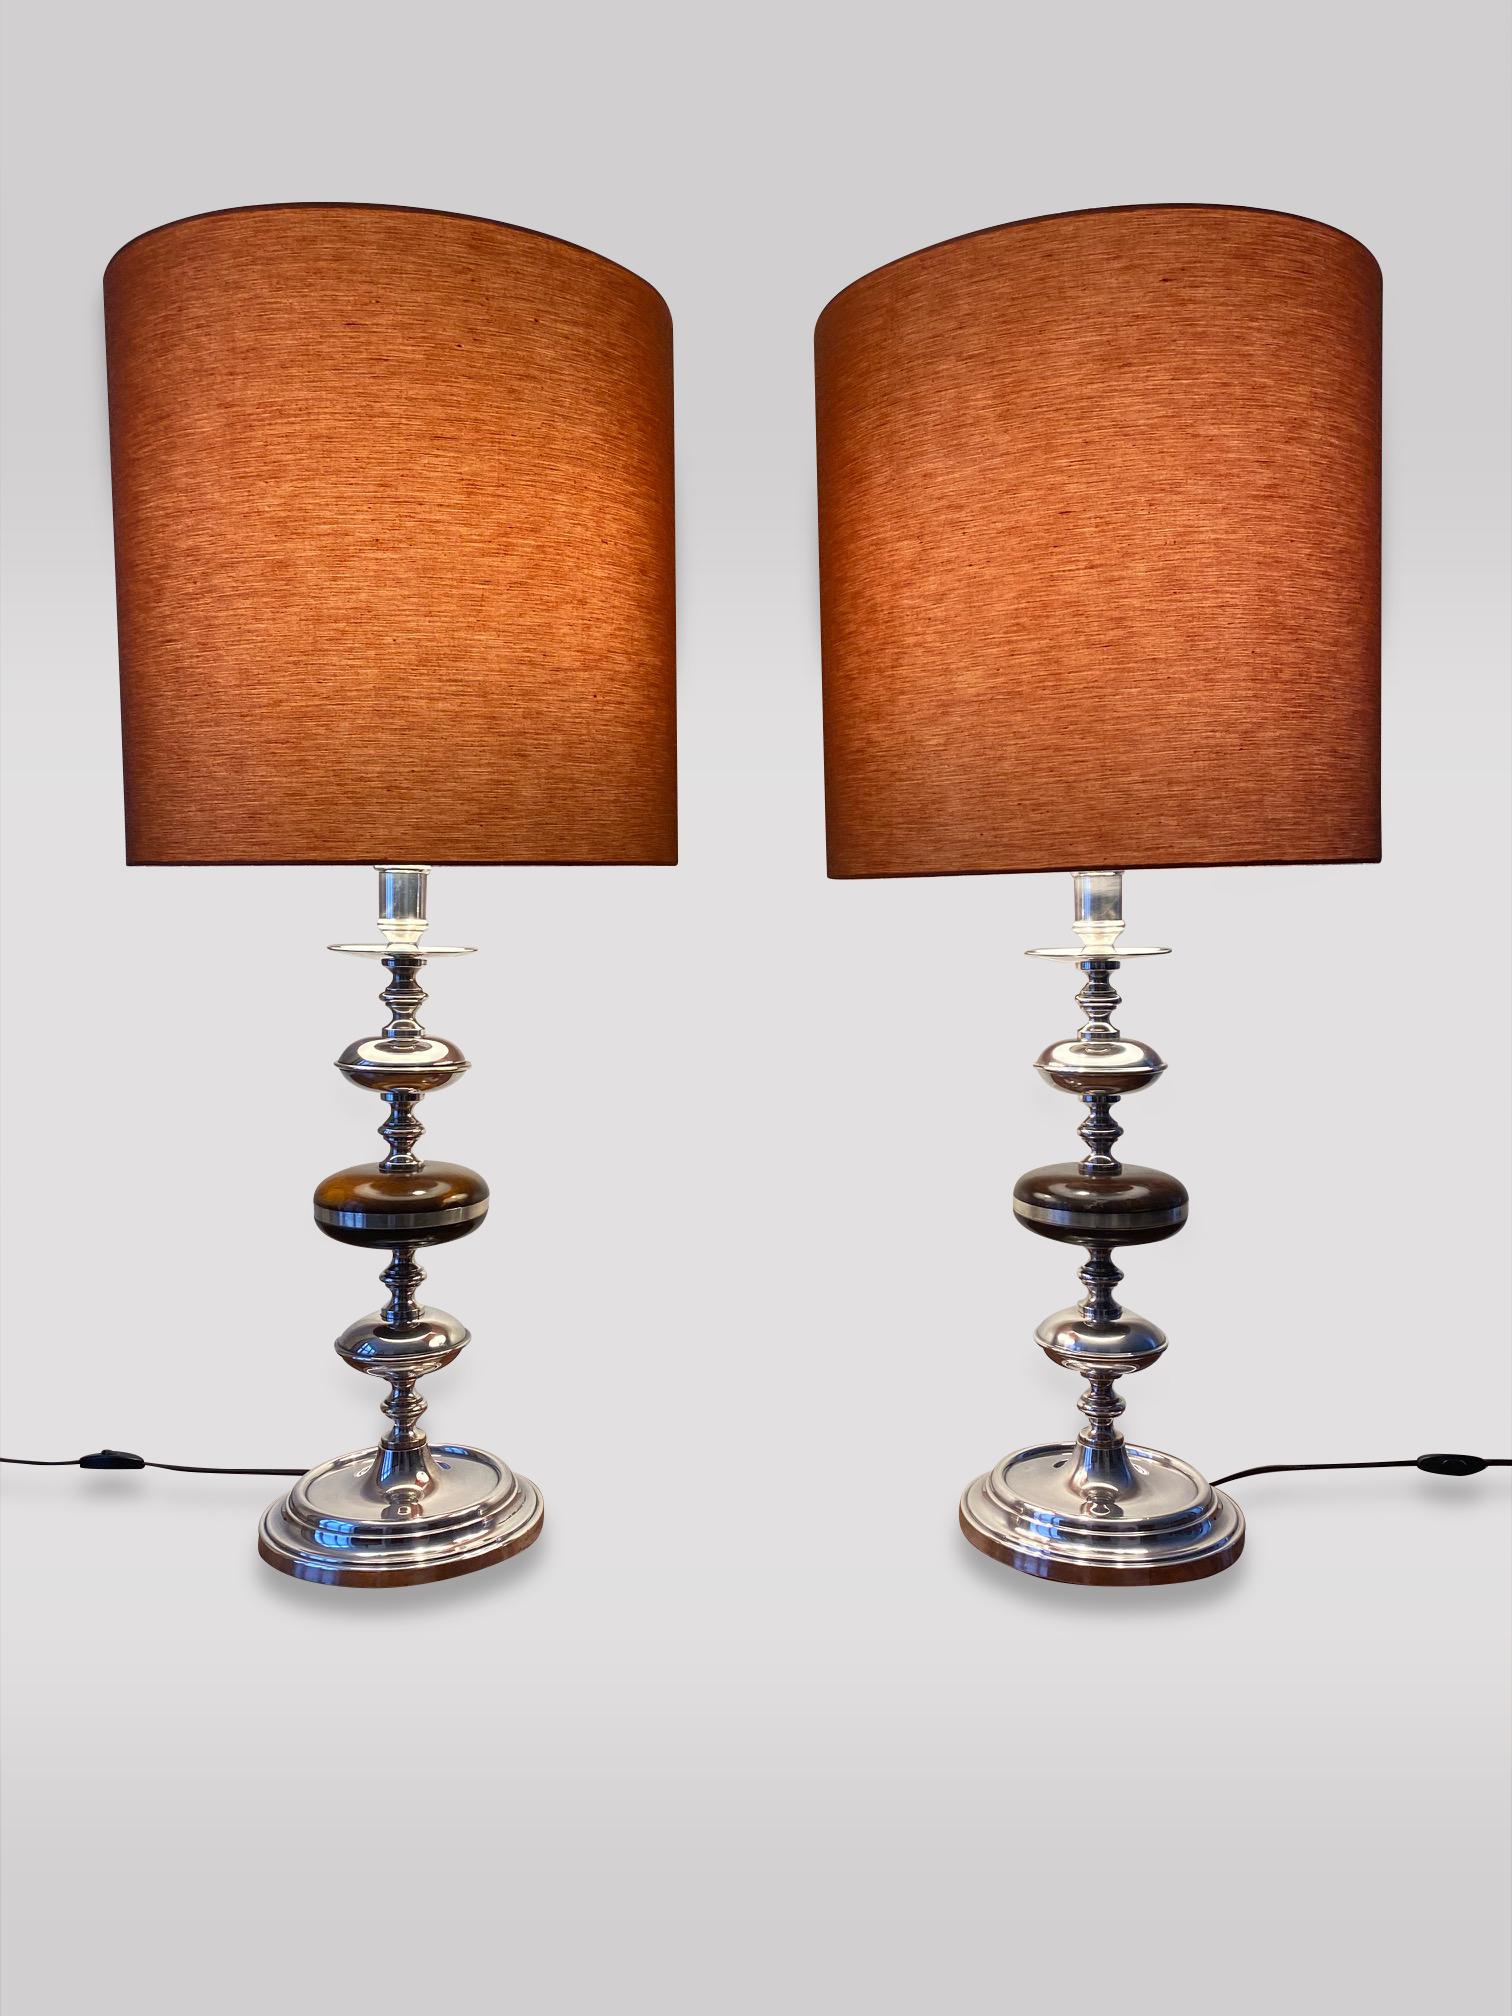 Ein sehr dekoratives Paar hoher silberner Kandelaber-Tischlampen mit hohen runden orangefarbenen Lampenschirmen. In perfektem Betriebszustand. 

Die Maße des Lampenschirms sind 45cm hoch und 46cm Durchmesser. 
Die Maße des Kandelabers sind 102cm